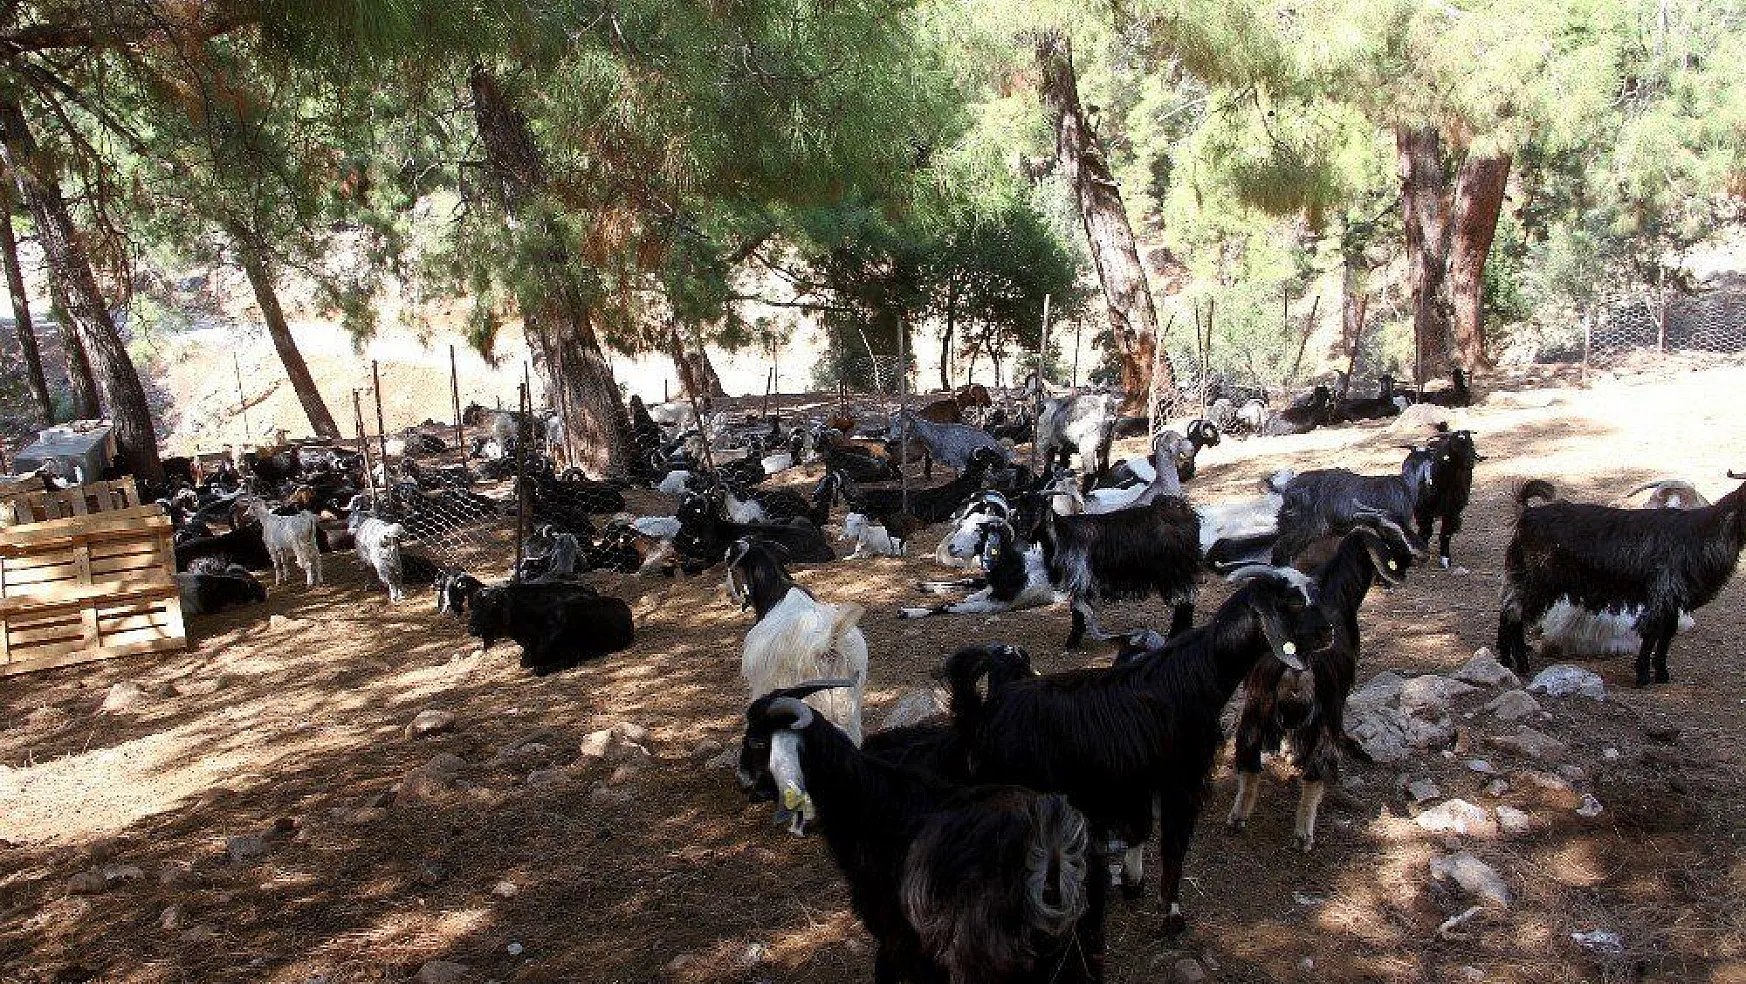 Fethiye'de kurtlar keçi sürüsüne saldırdı: 35 keçi telef oldu